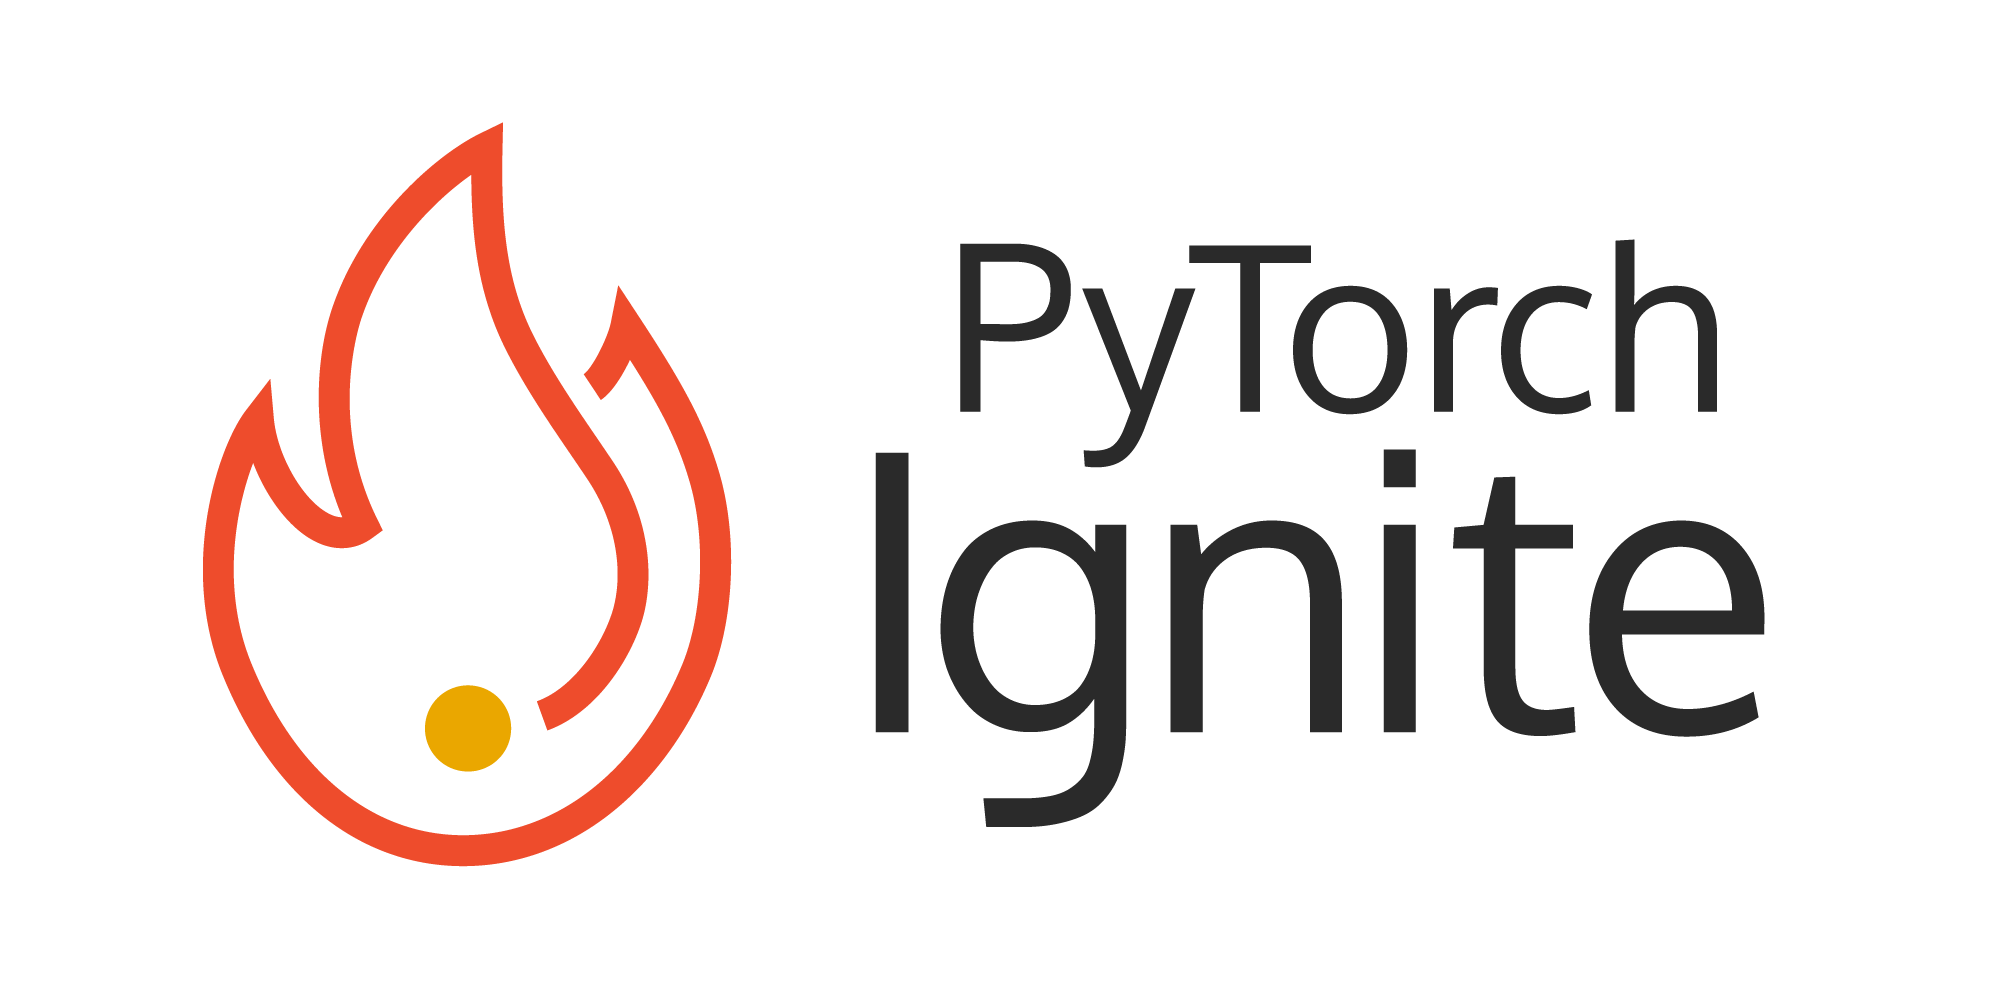 PyTorch-Ignite logo.